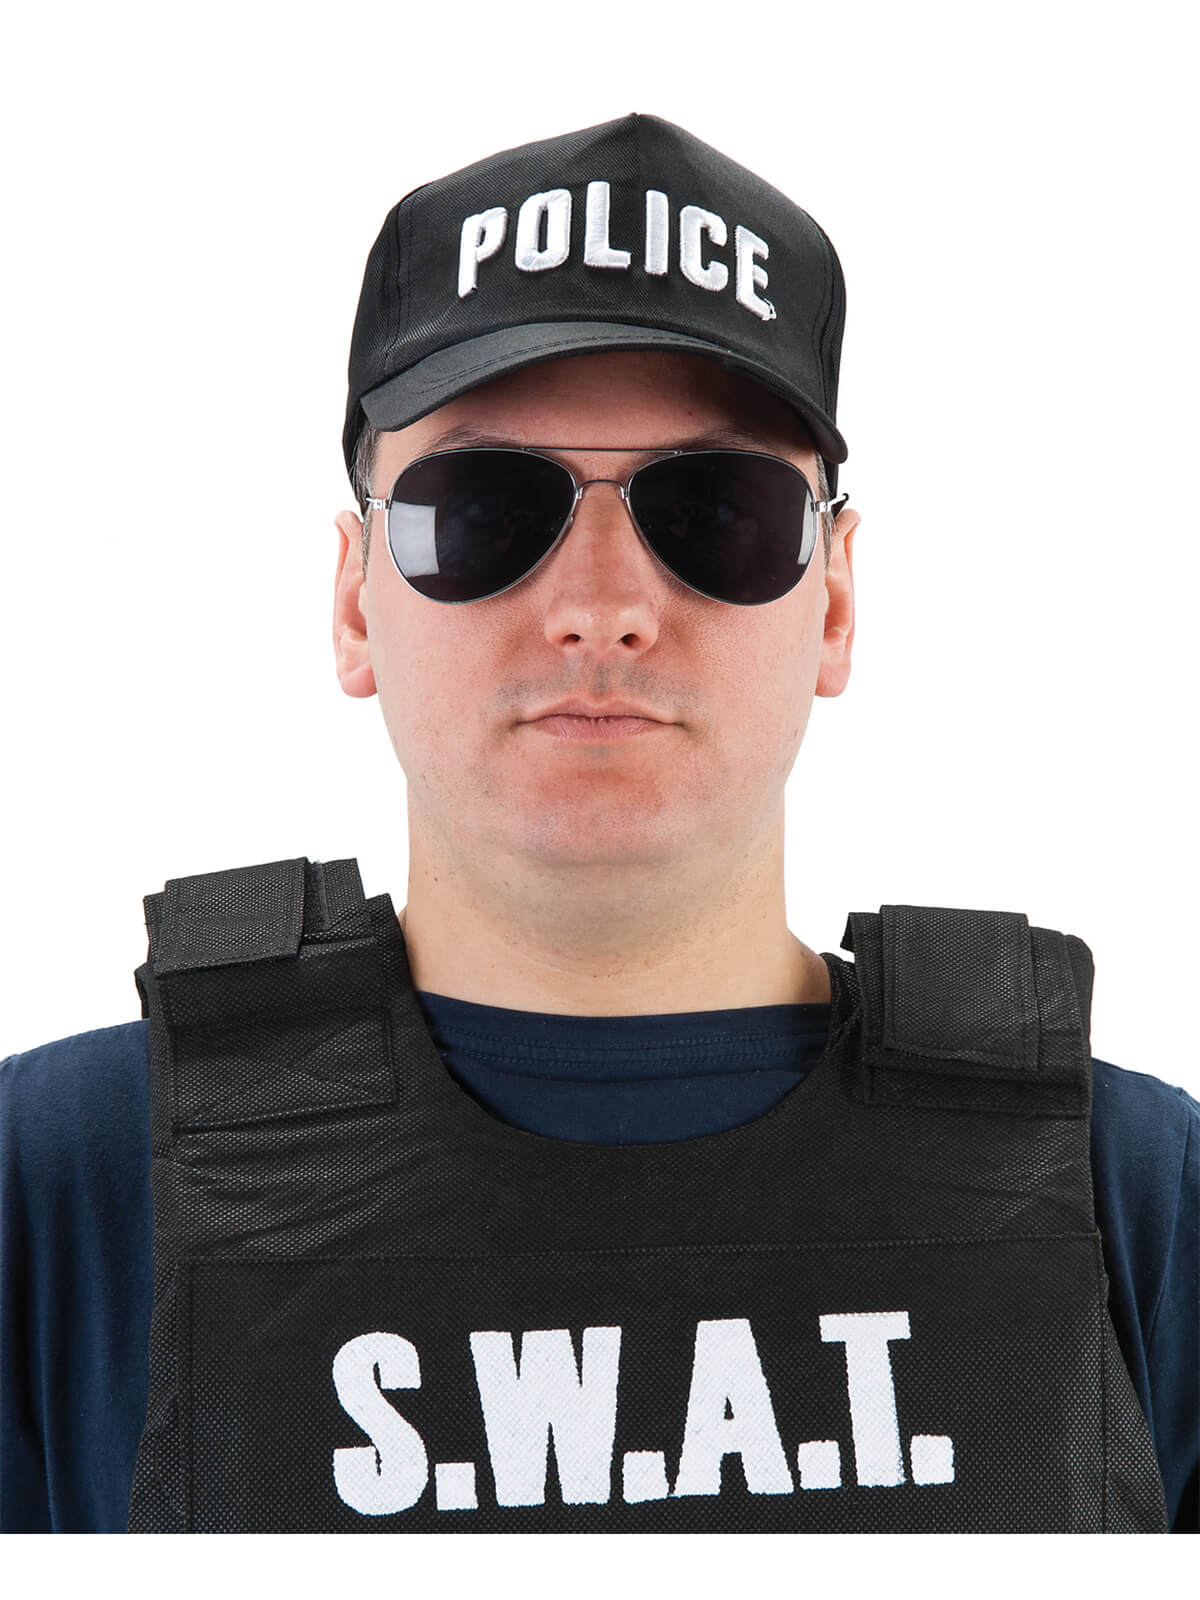 Police Cap (adjustable)